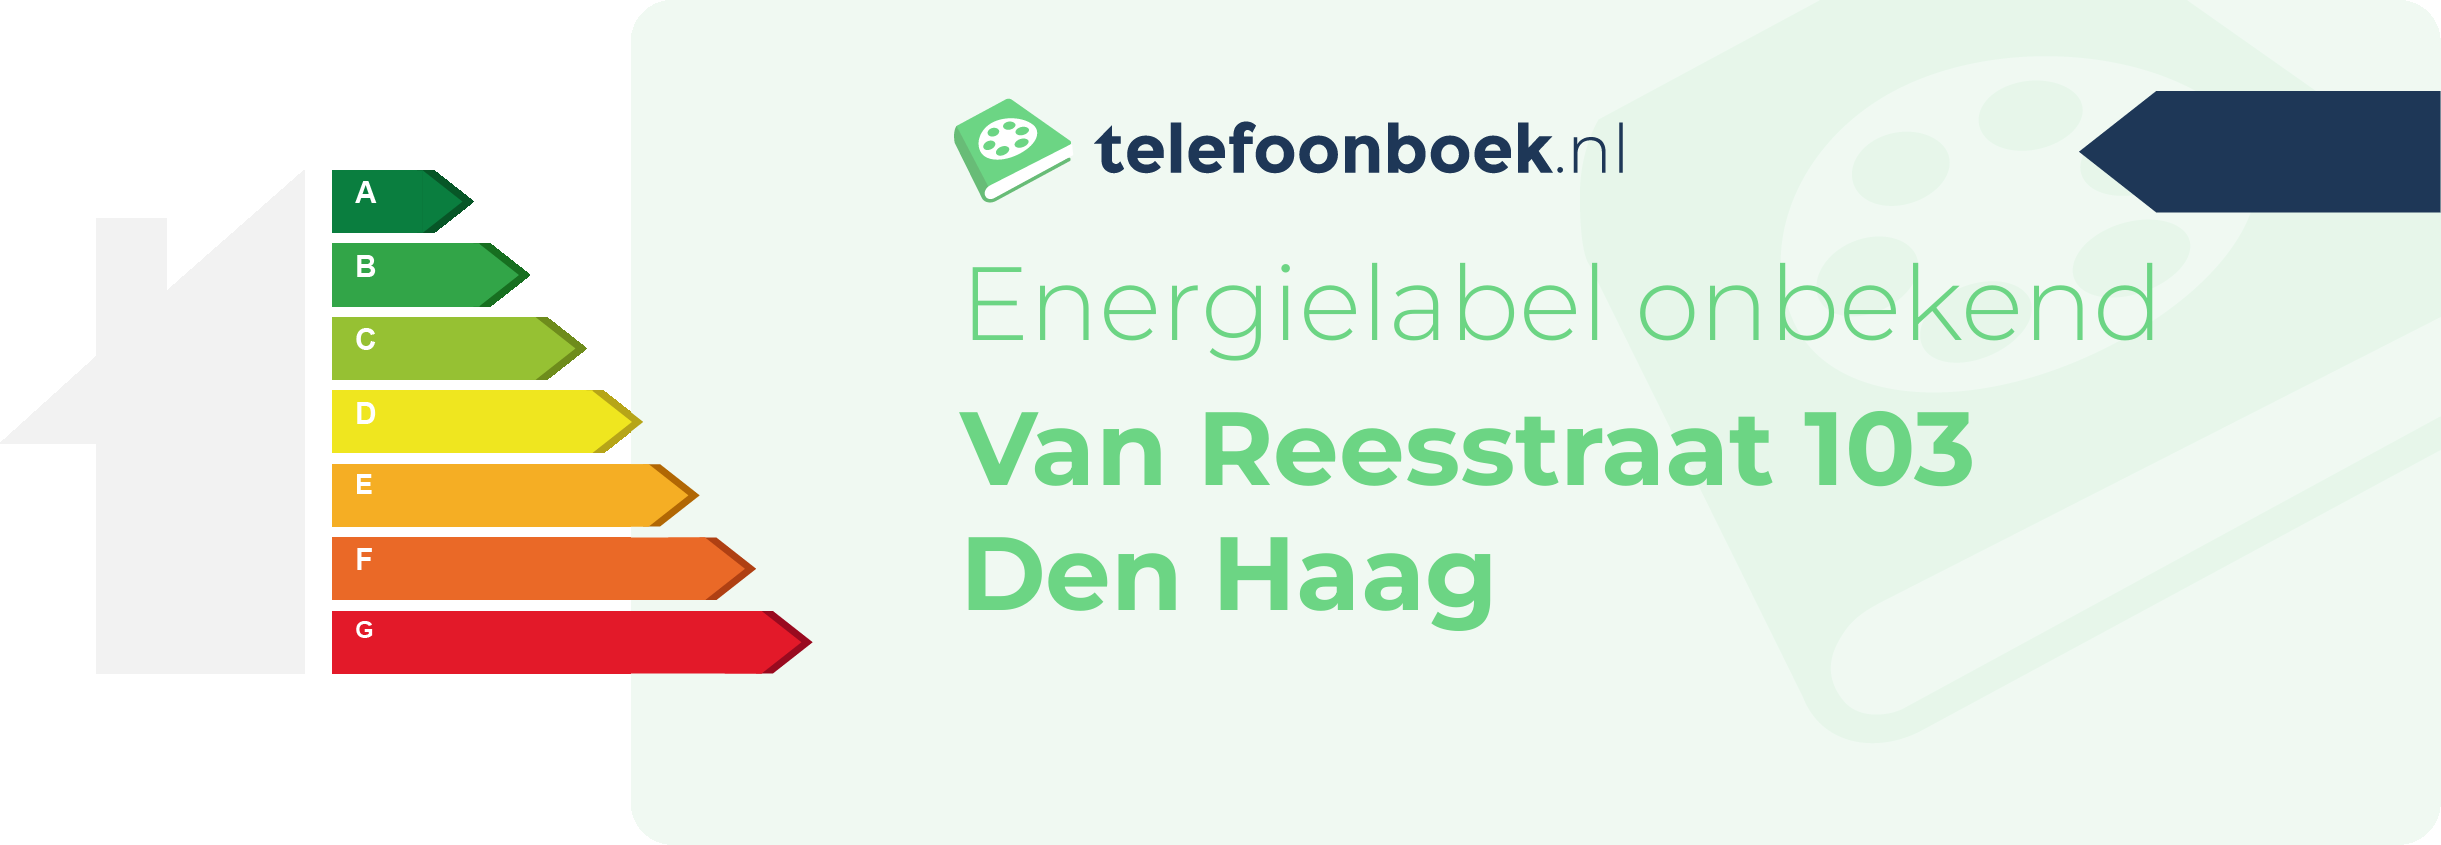 Energielabel Van Reesstraat 103 Den Haag